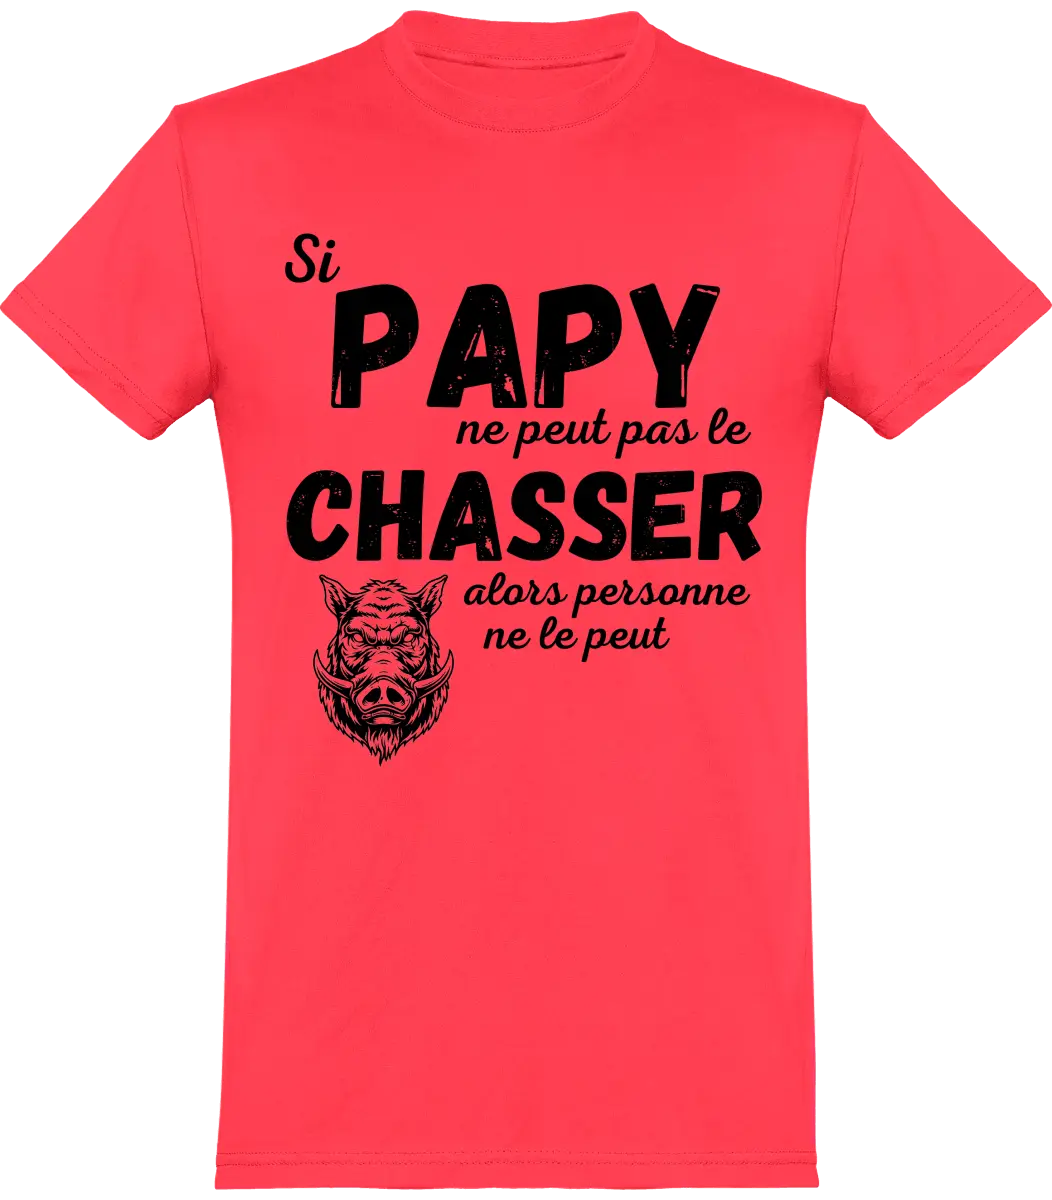 T-shirt chasseur si papy ne peut pas pas le chasser alors personne ne le peut | Mixte - French Humour